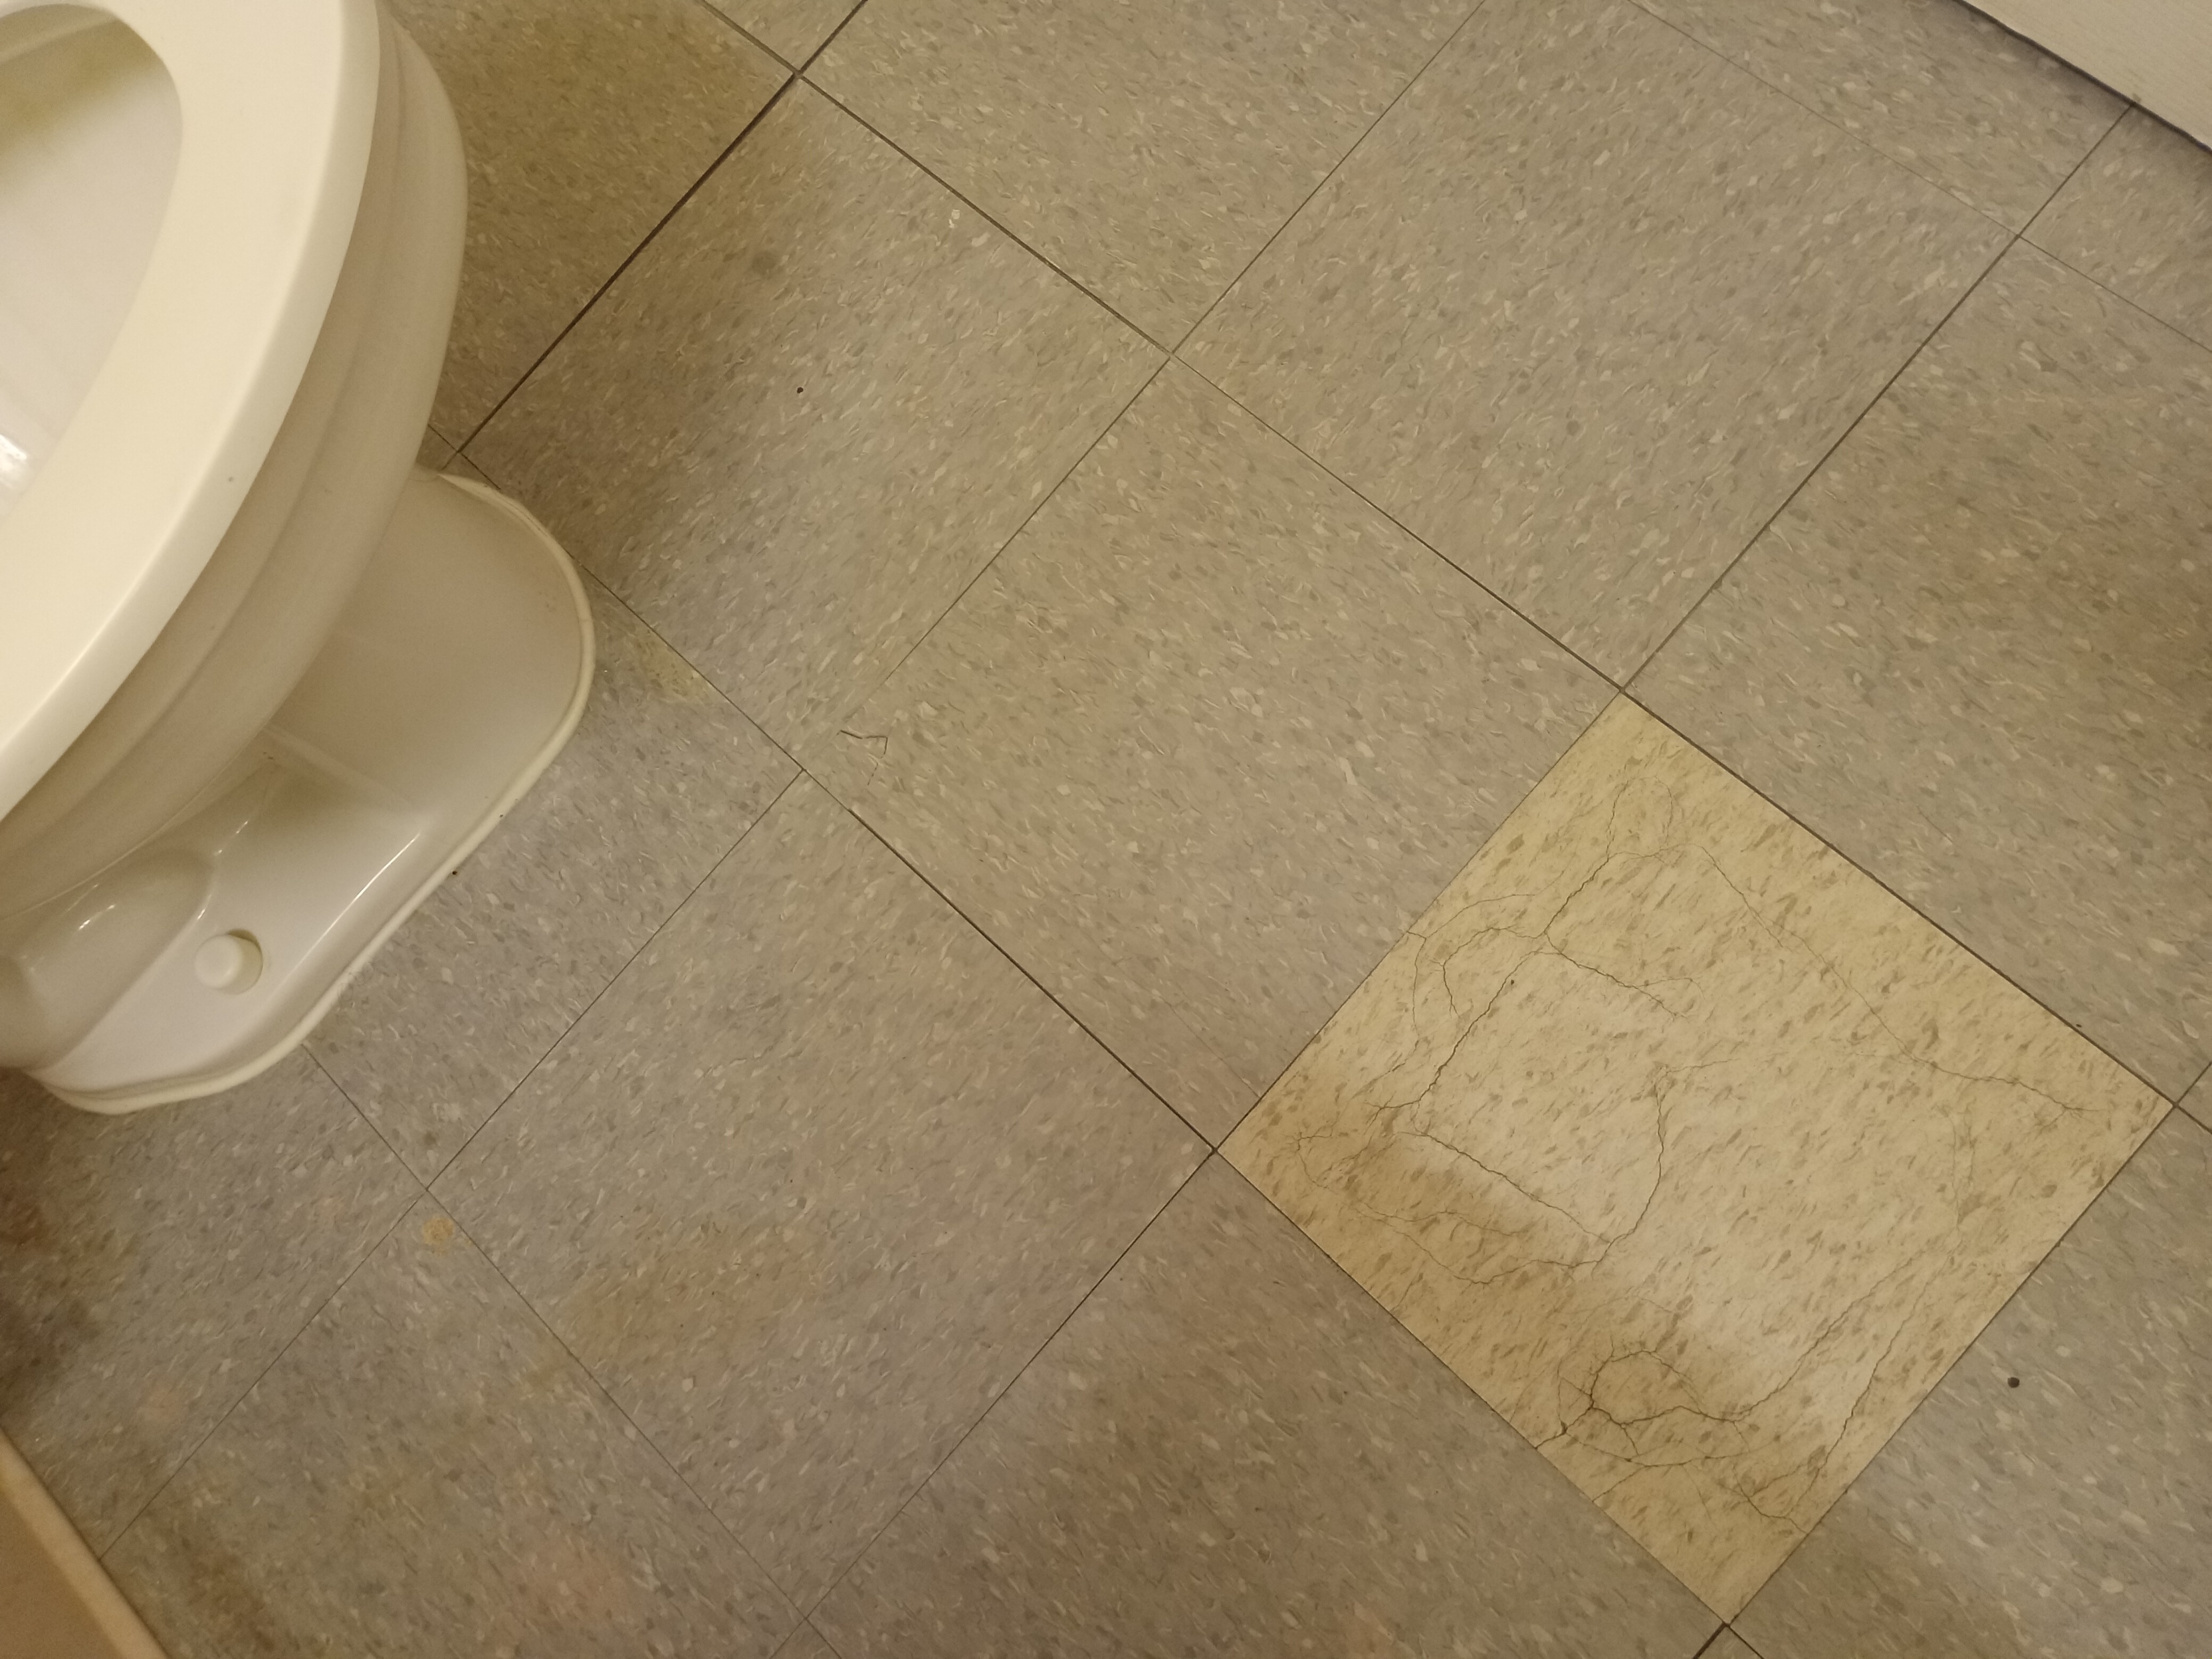 Bathroom Loose Floor Tiles